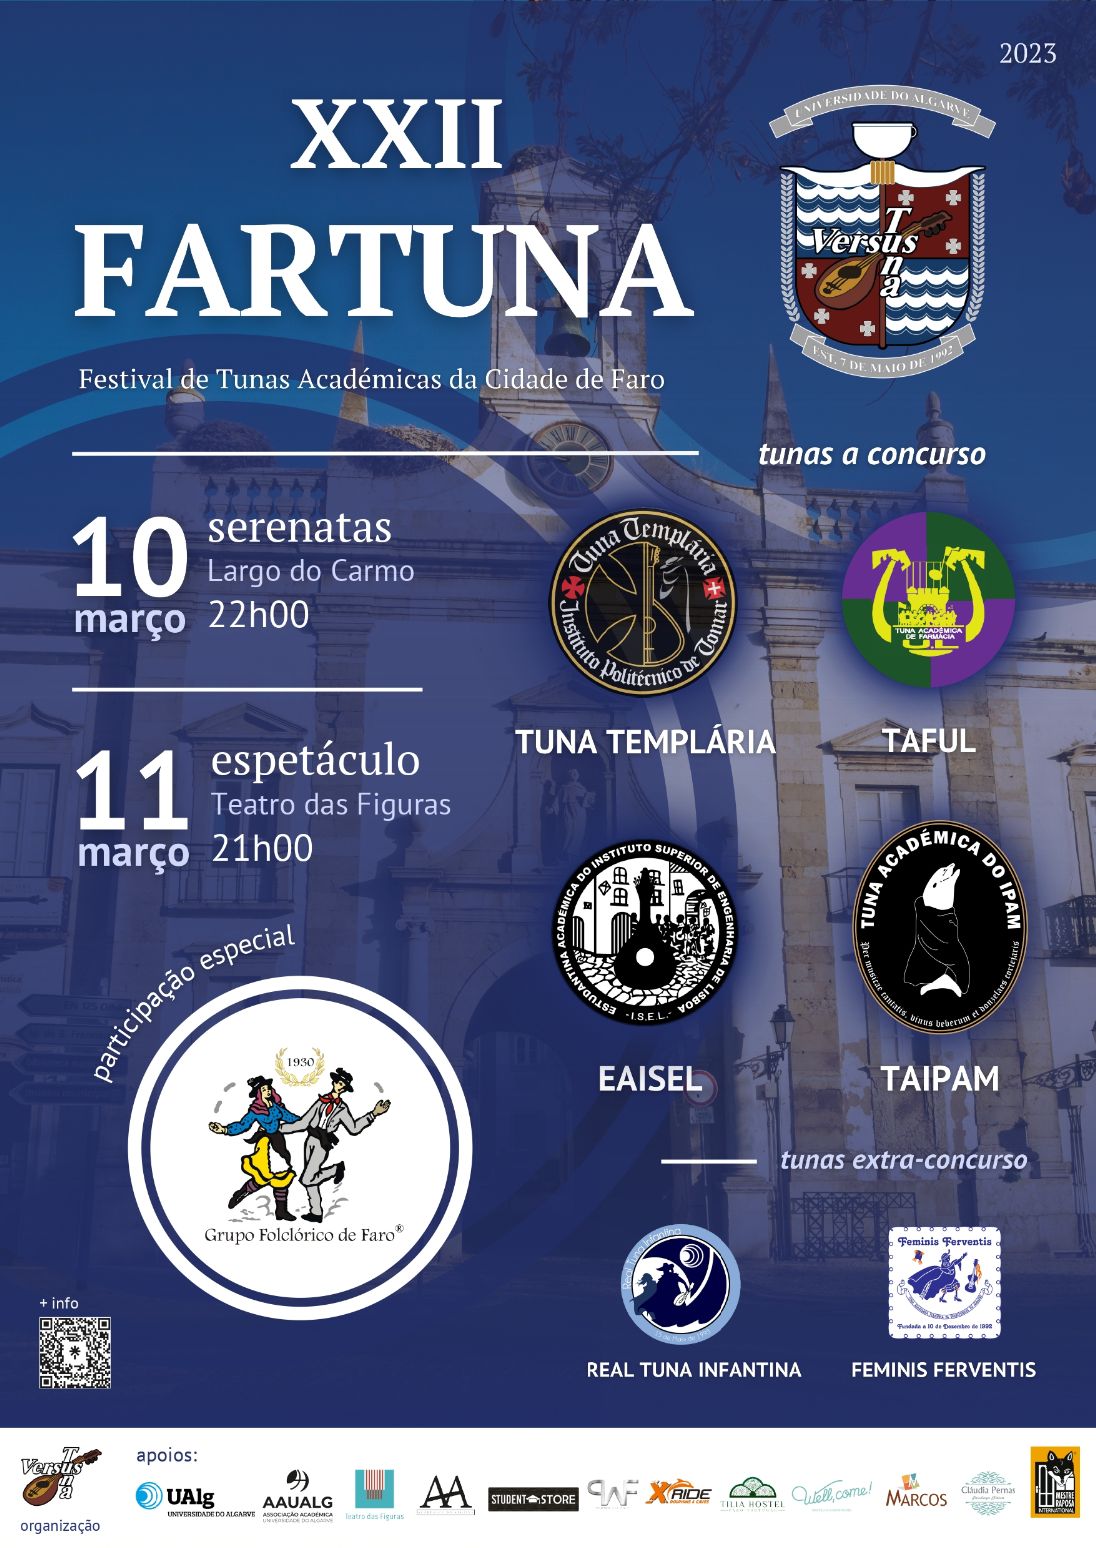 XII FARTUNA - Festival de Tunas Académicas da Cidade de Faro